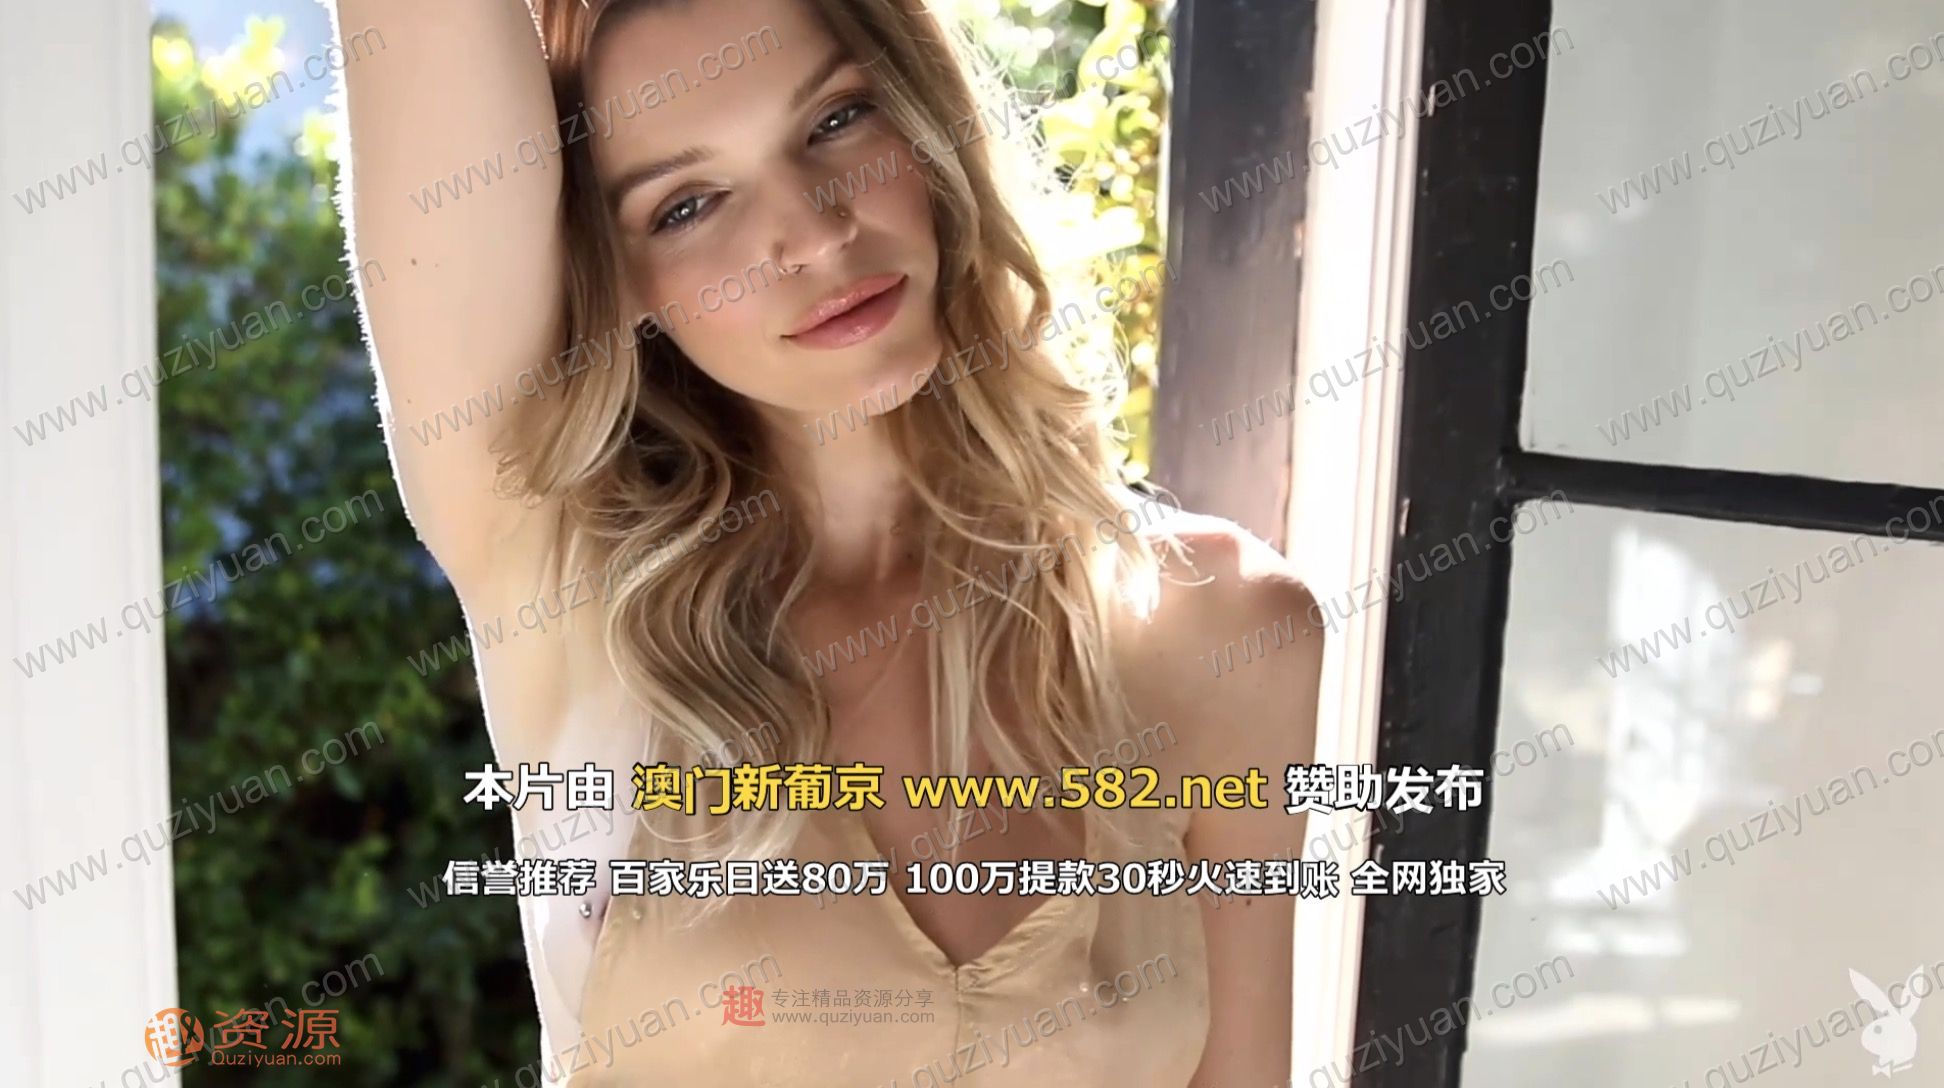 Playboy女模特加长版视频写真 百度网盘插图